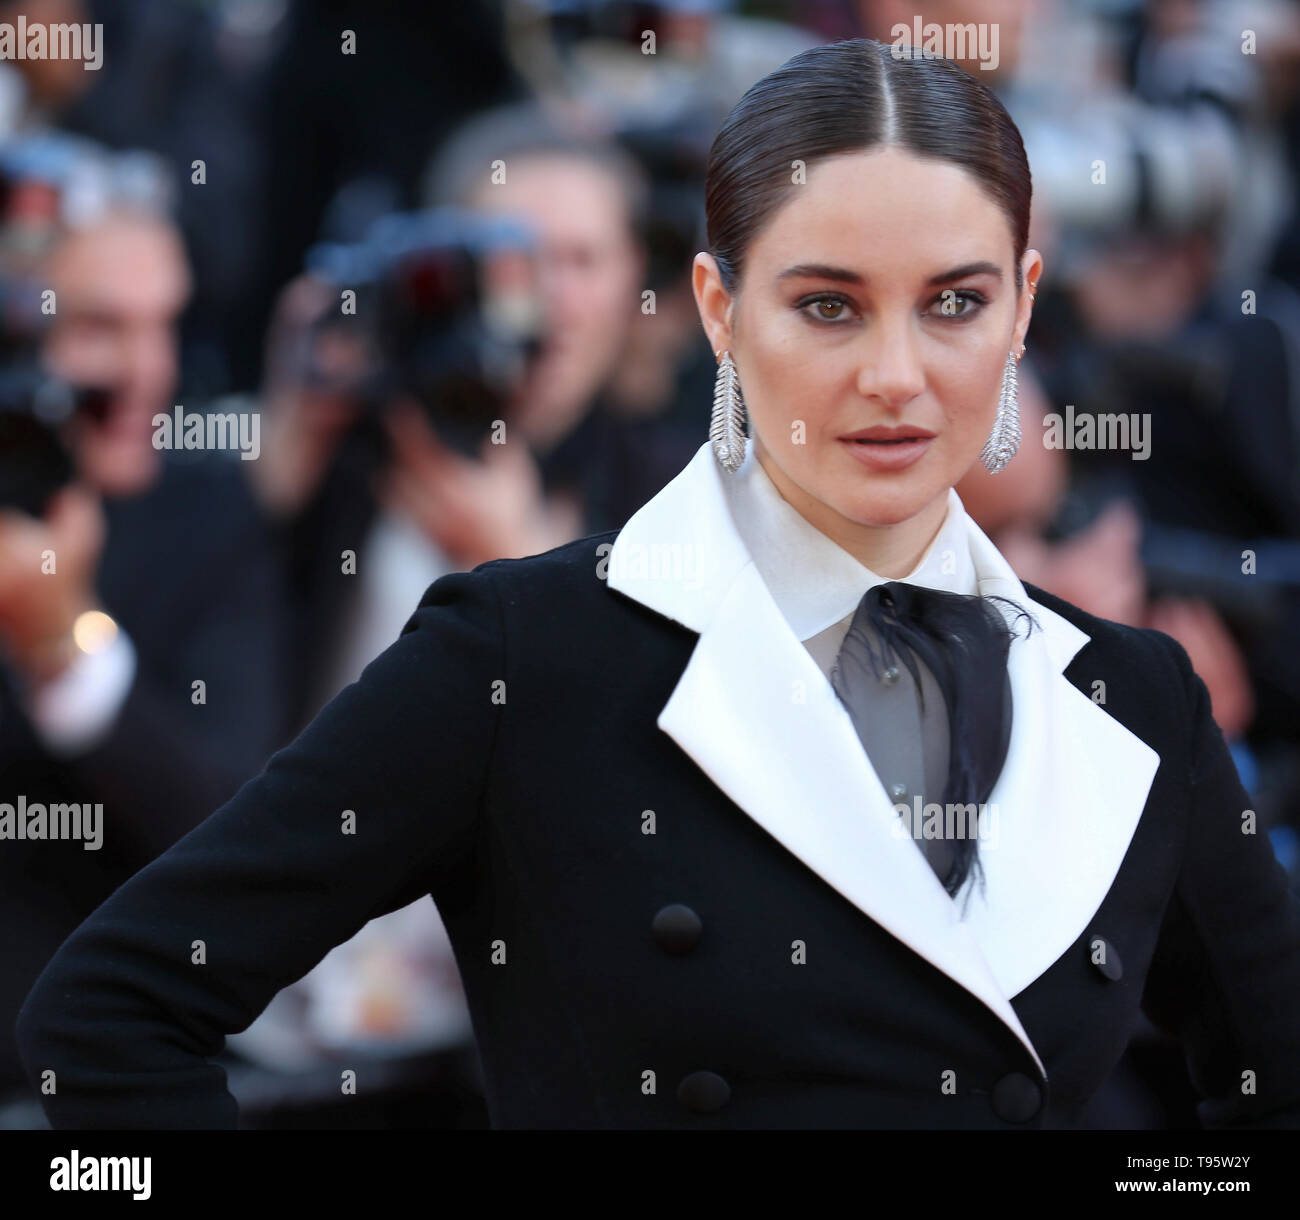 CANNES, Francia - 16 Maggio: Shailene Woodley assiste lo screening di "Rocket Man' durante la 72a Cannes Film Festival (credito: Mickael Chavet/Progetto Alba/Alamy Live News) Foto Stock